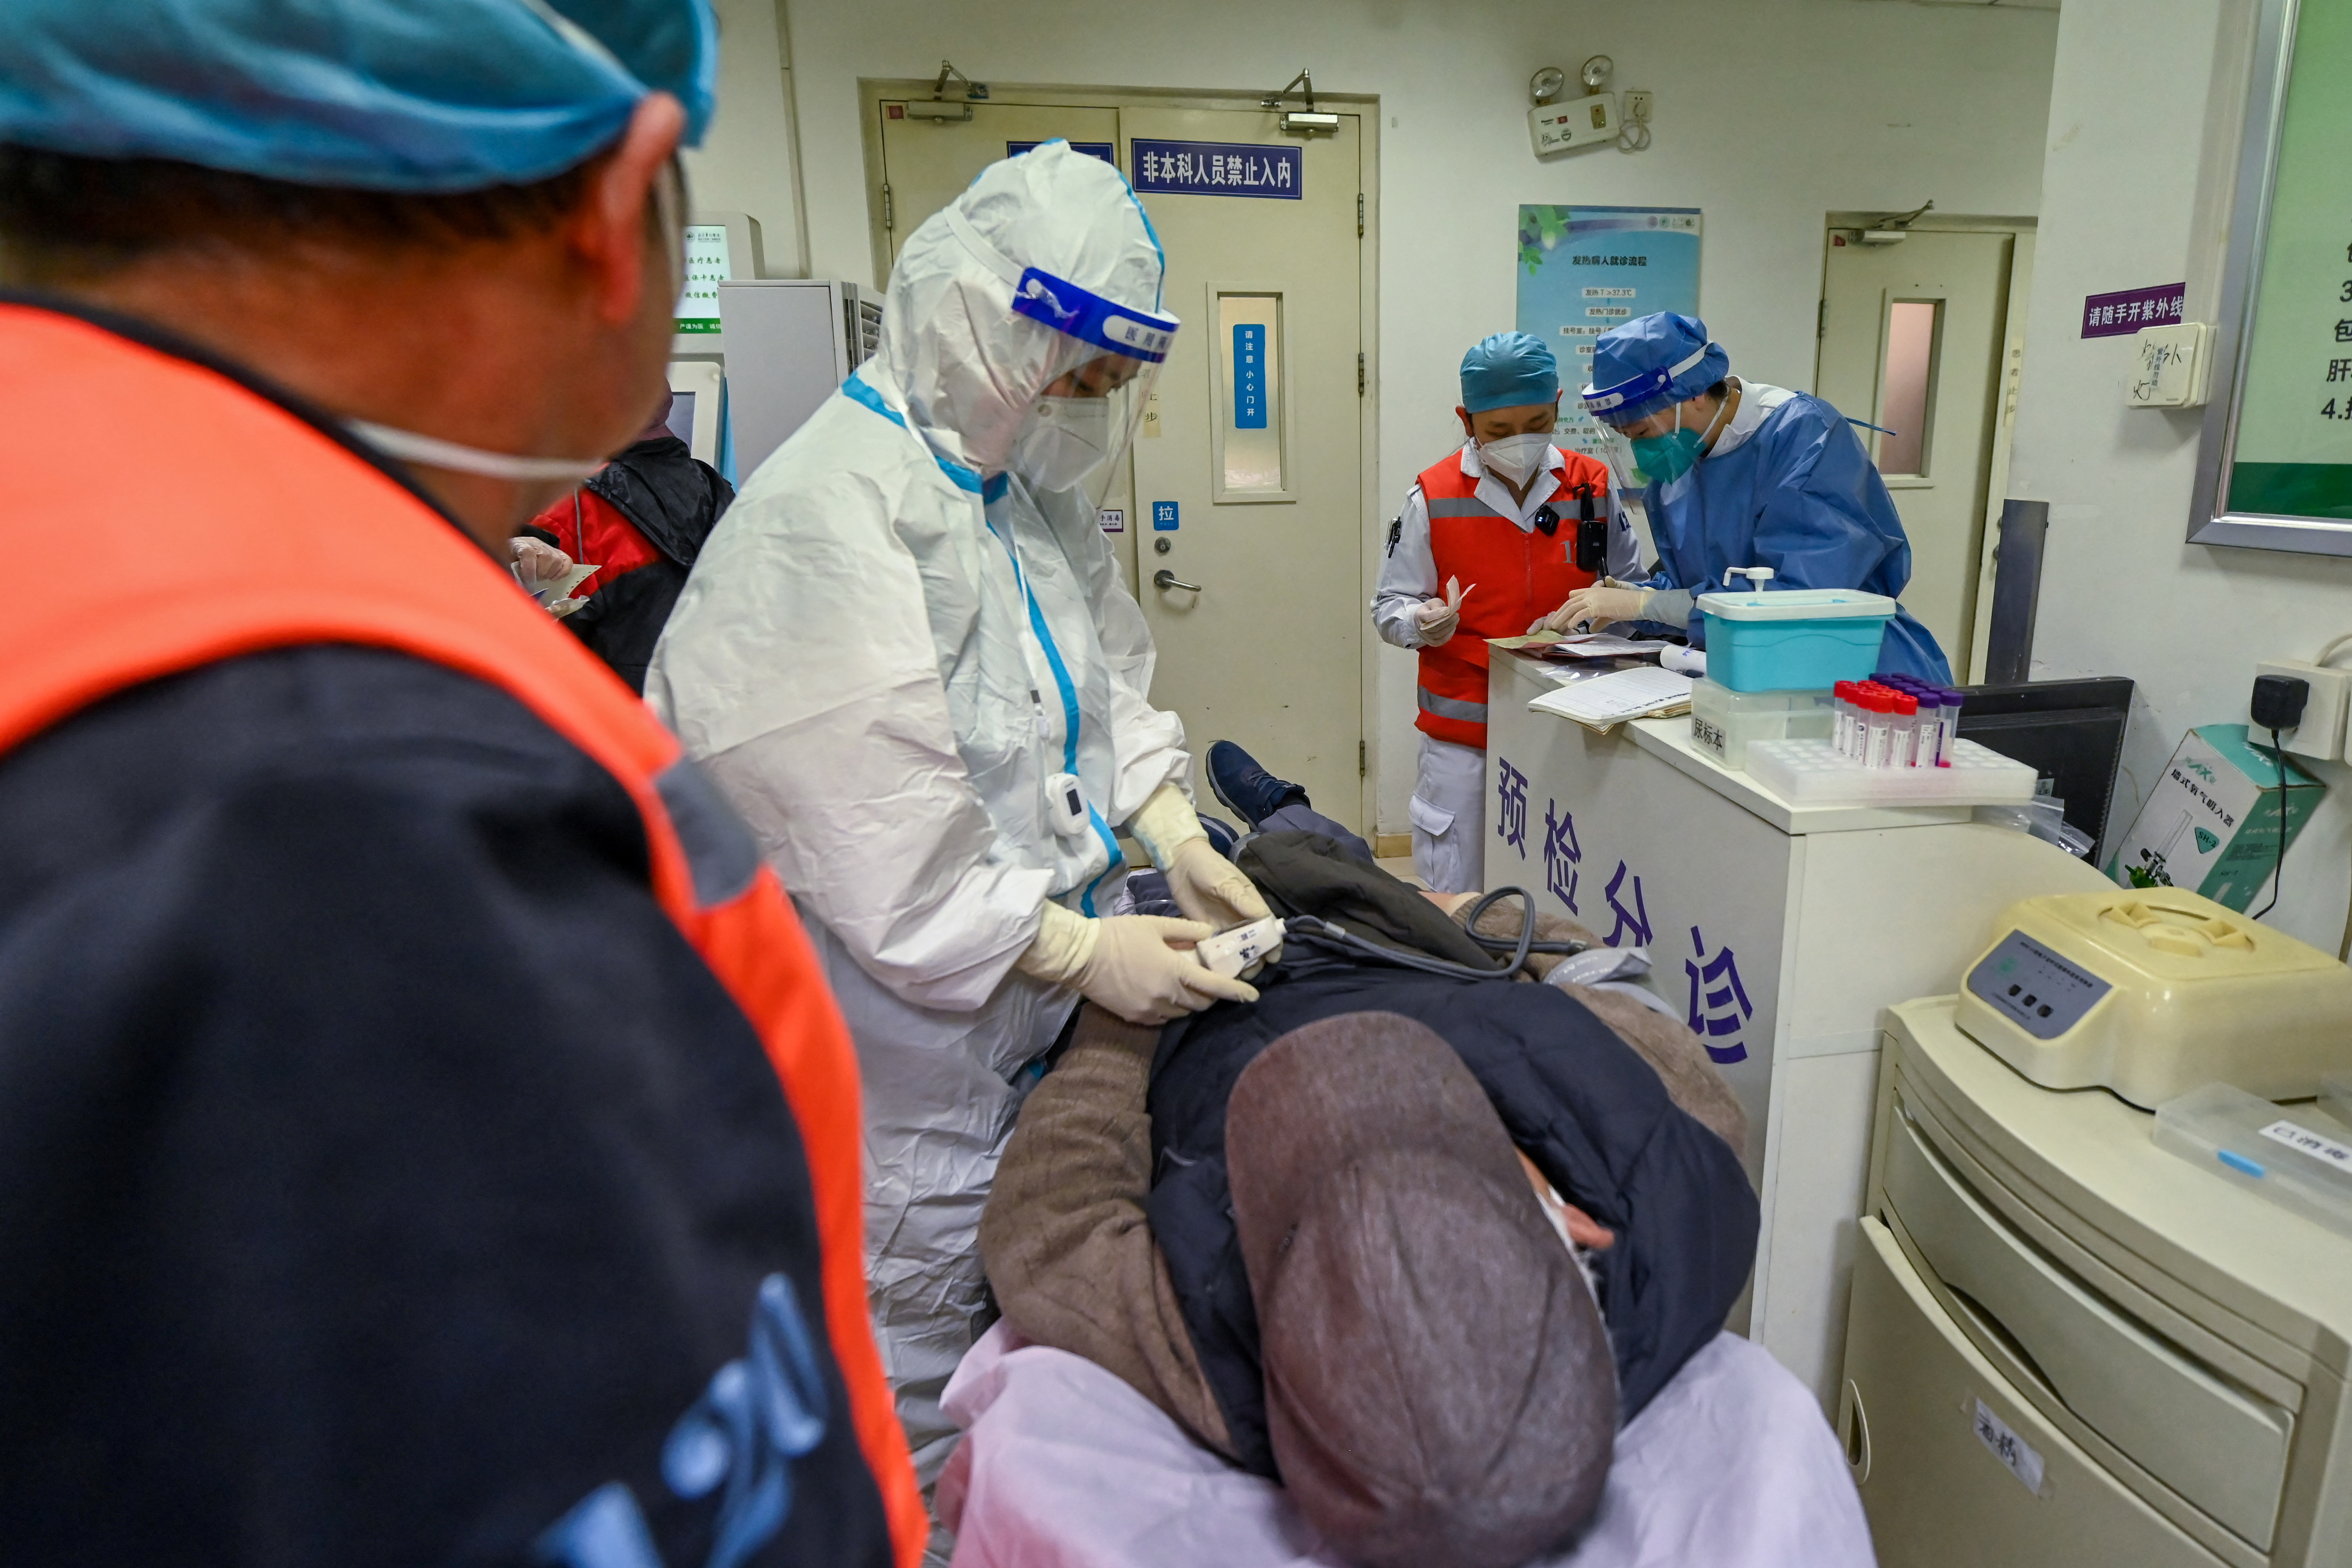 Un medico del Chaoyang Emergency Rescue Center spiega le condizioni del paziente al personale ospedaliero quando arriva in ambulanza, in mezzo all'epidemia di coronavirus (COVID-19) a Pechino, Cina, 29 dicembre 2022. cnsphoto via REUTERS 